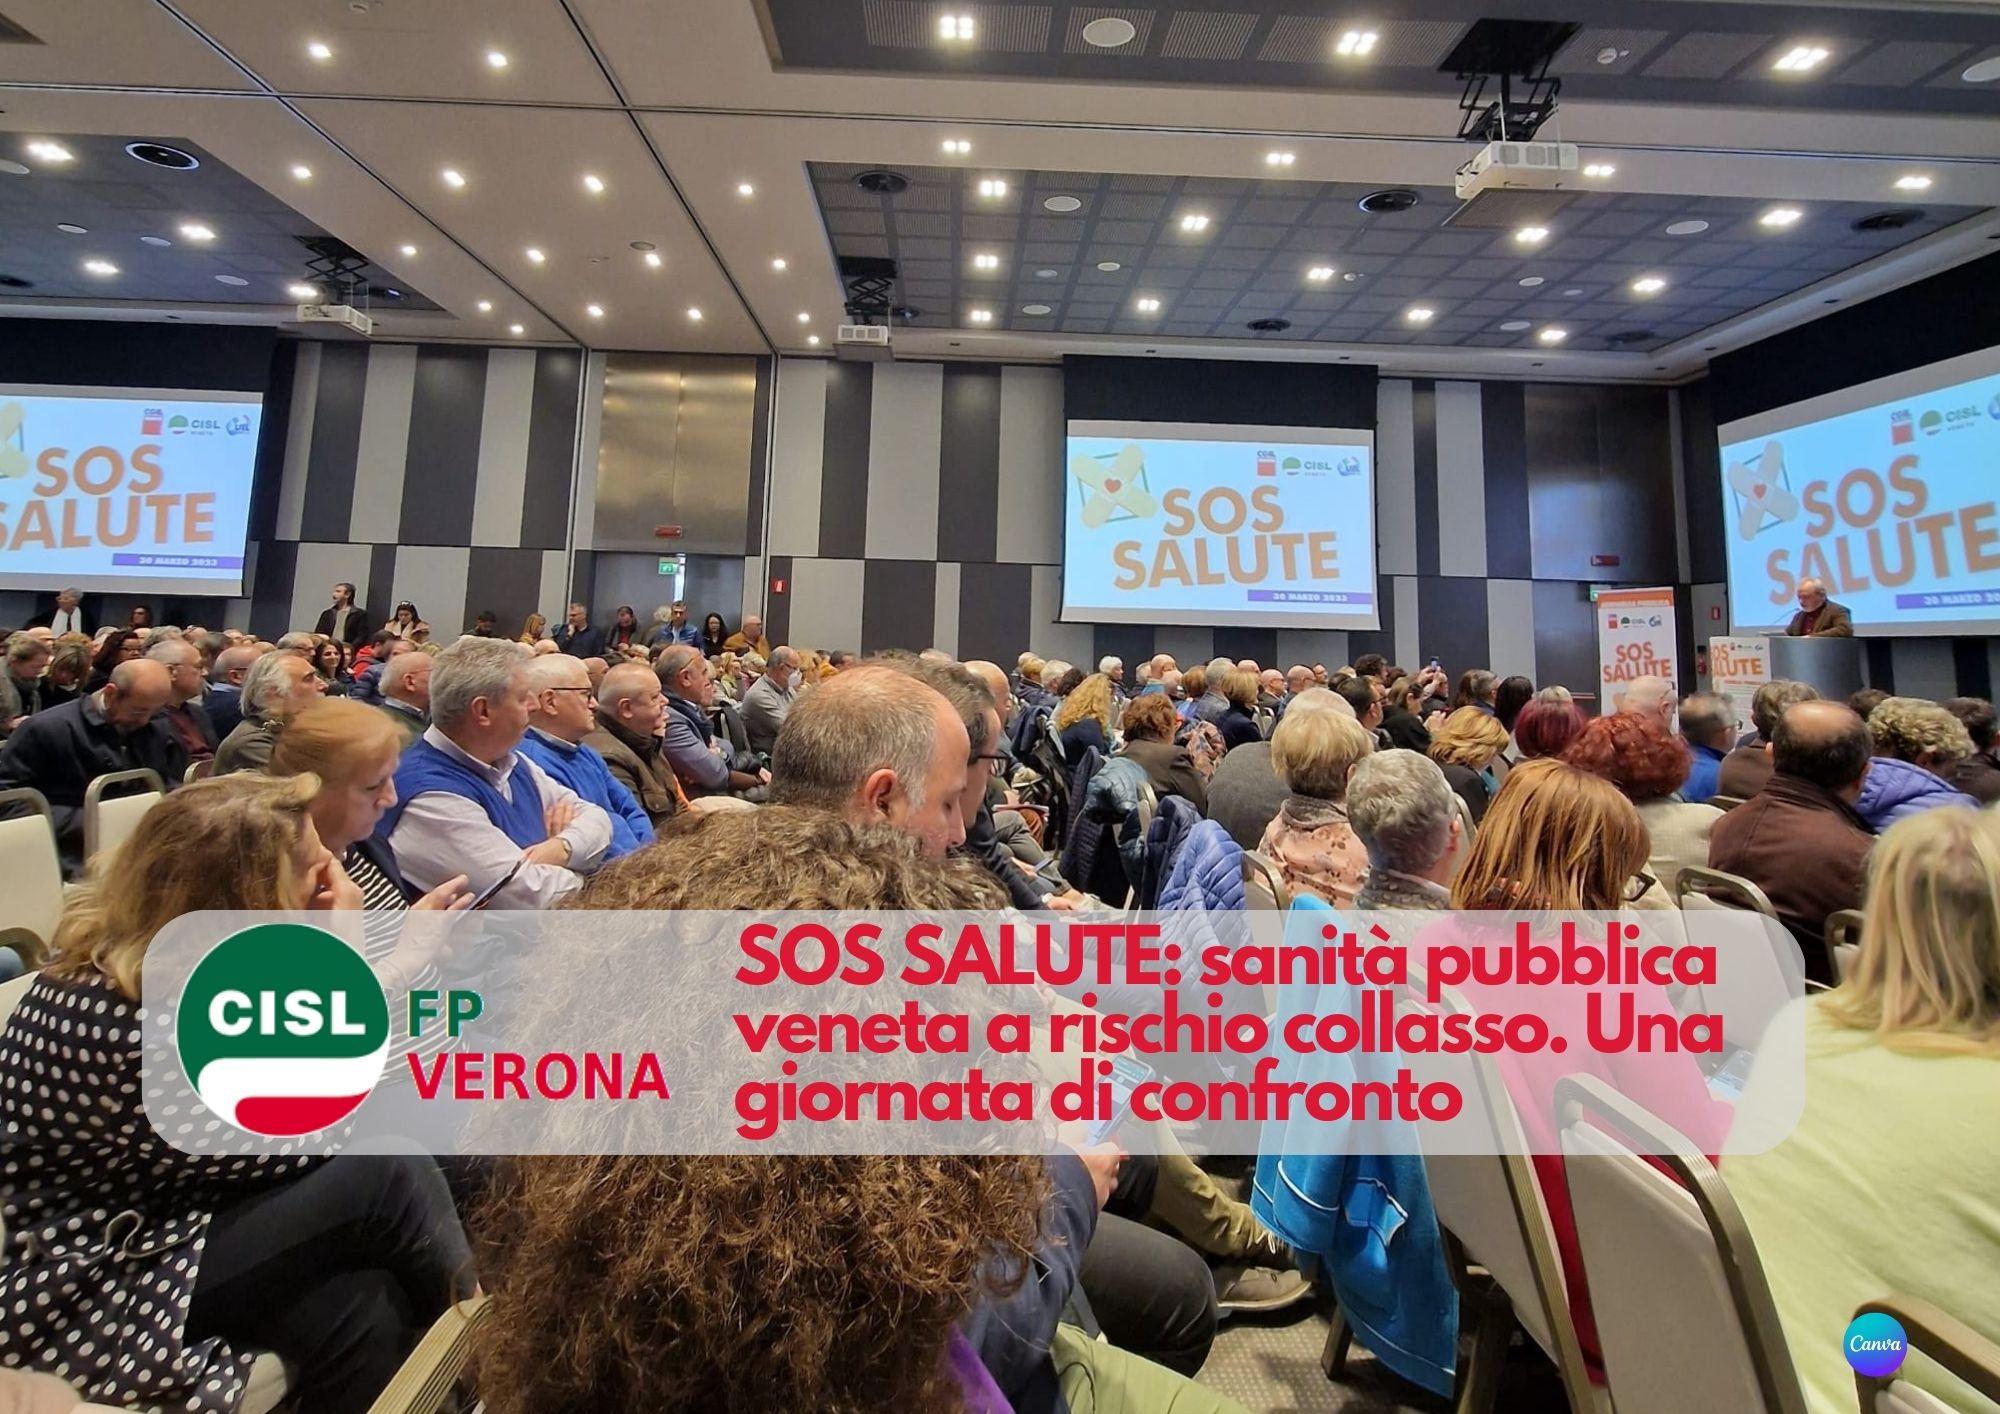 CISL FP Verona. SOS SALUTE: sanità pubblica veneta a rischio collasso. Una giornata di confronto